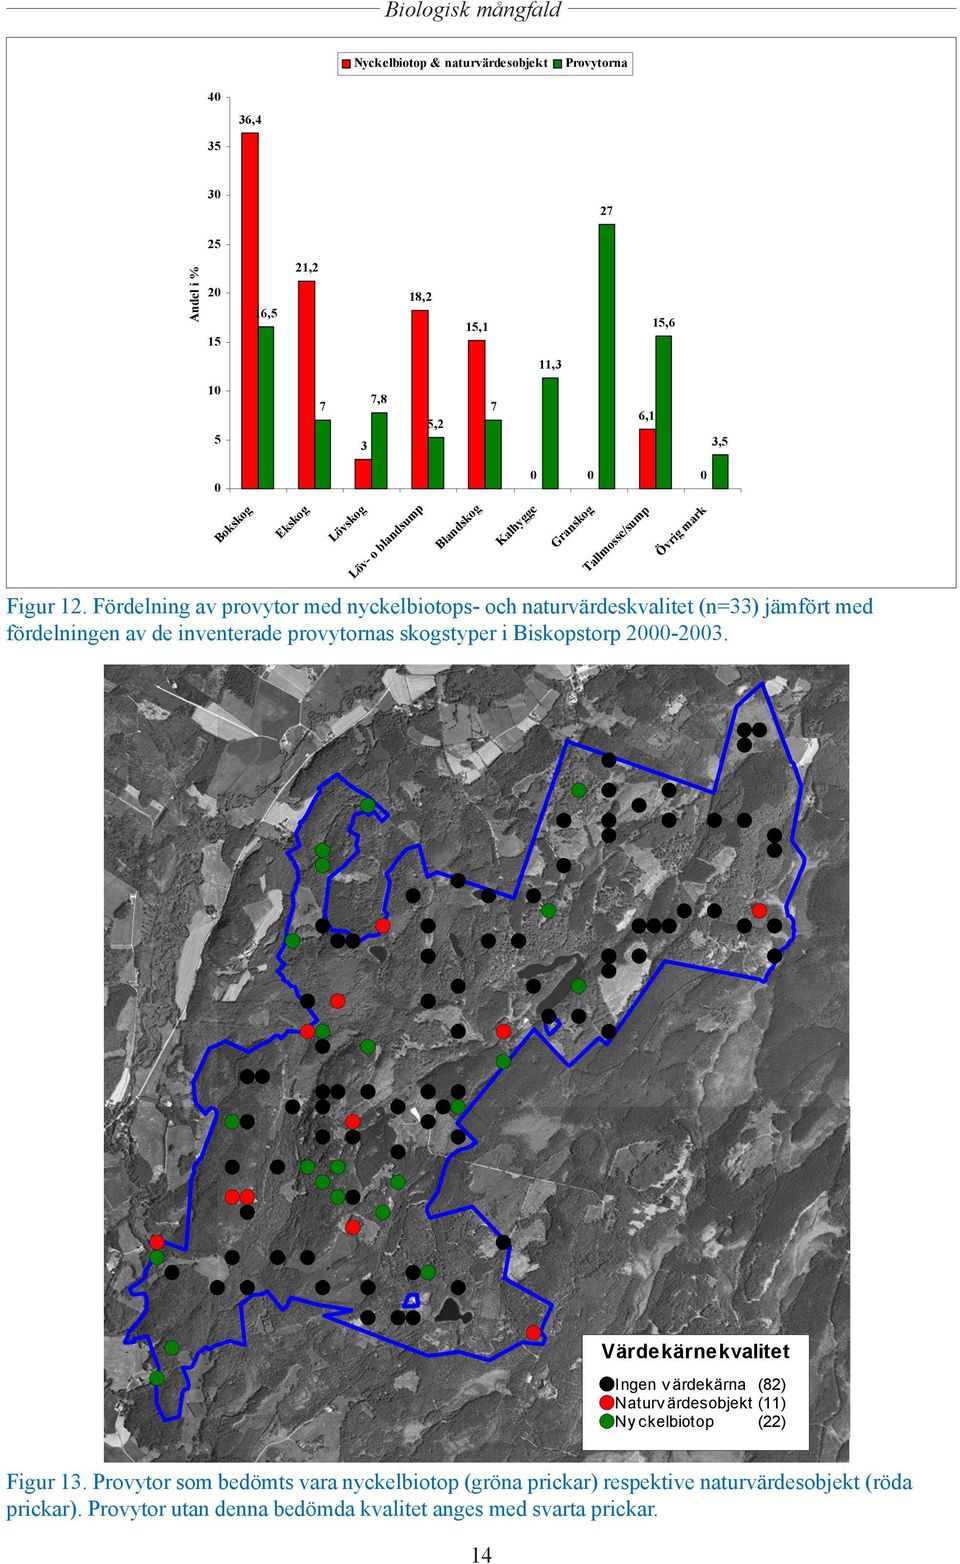 Fördelning av provytor med nyckelbiotops- och naturvärdeskvalitet (n=33) jämfört med fördelningen av de inventerade provytornas skogstyper i Biskopstorp 2000-2003.